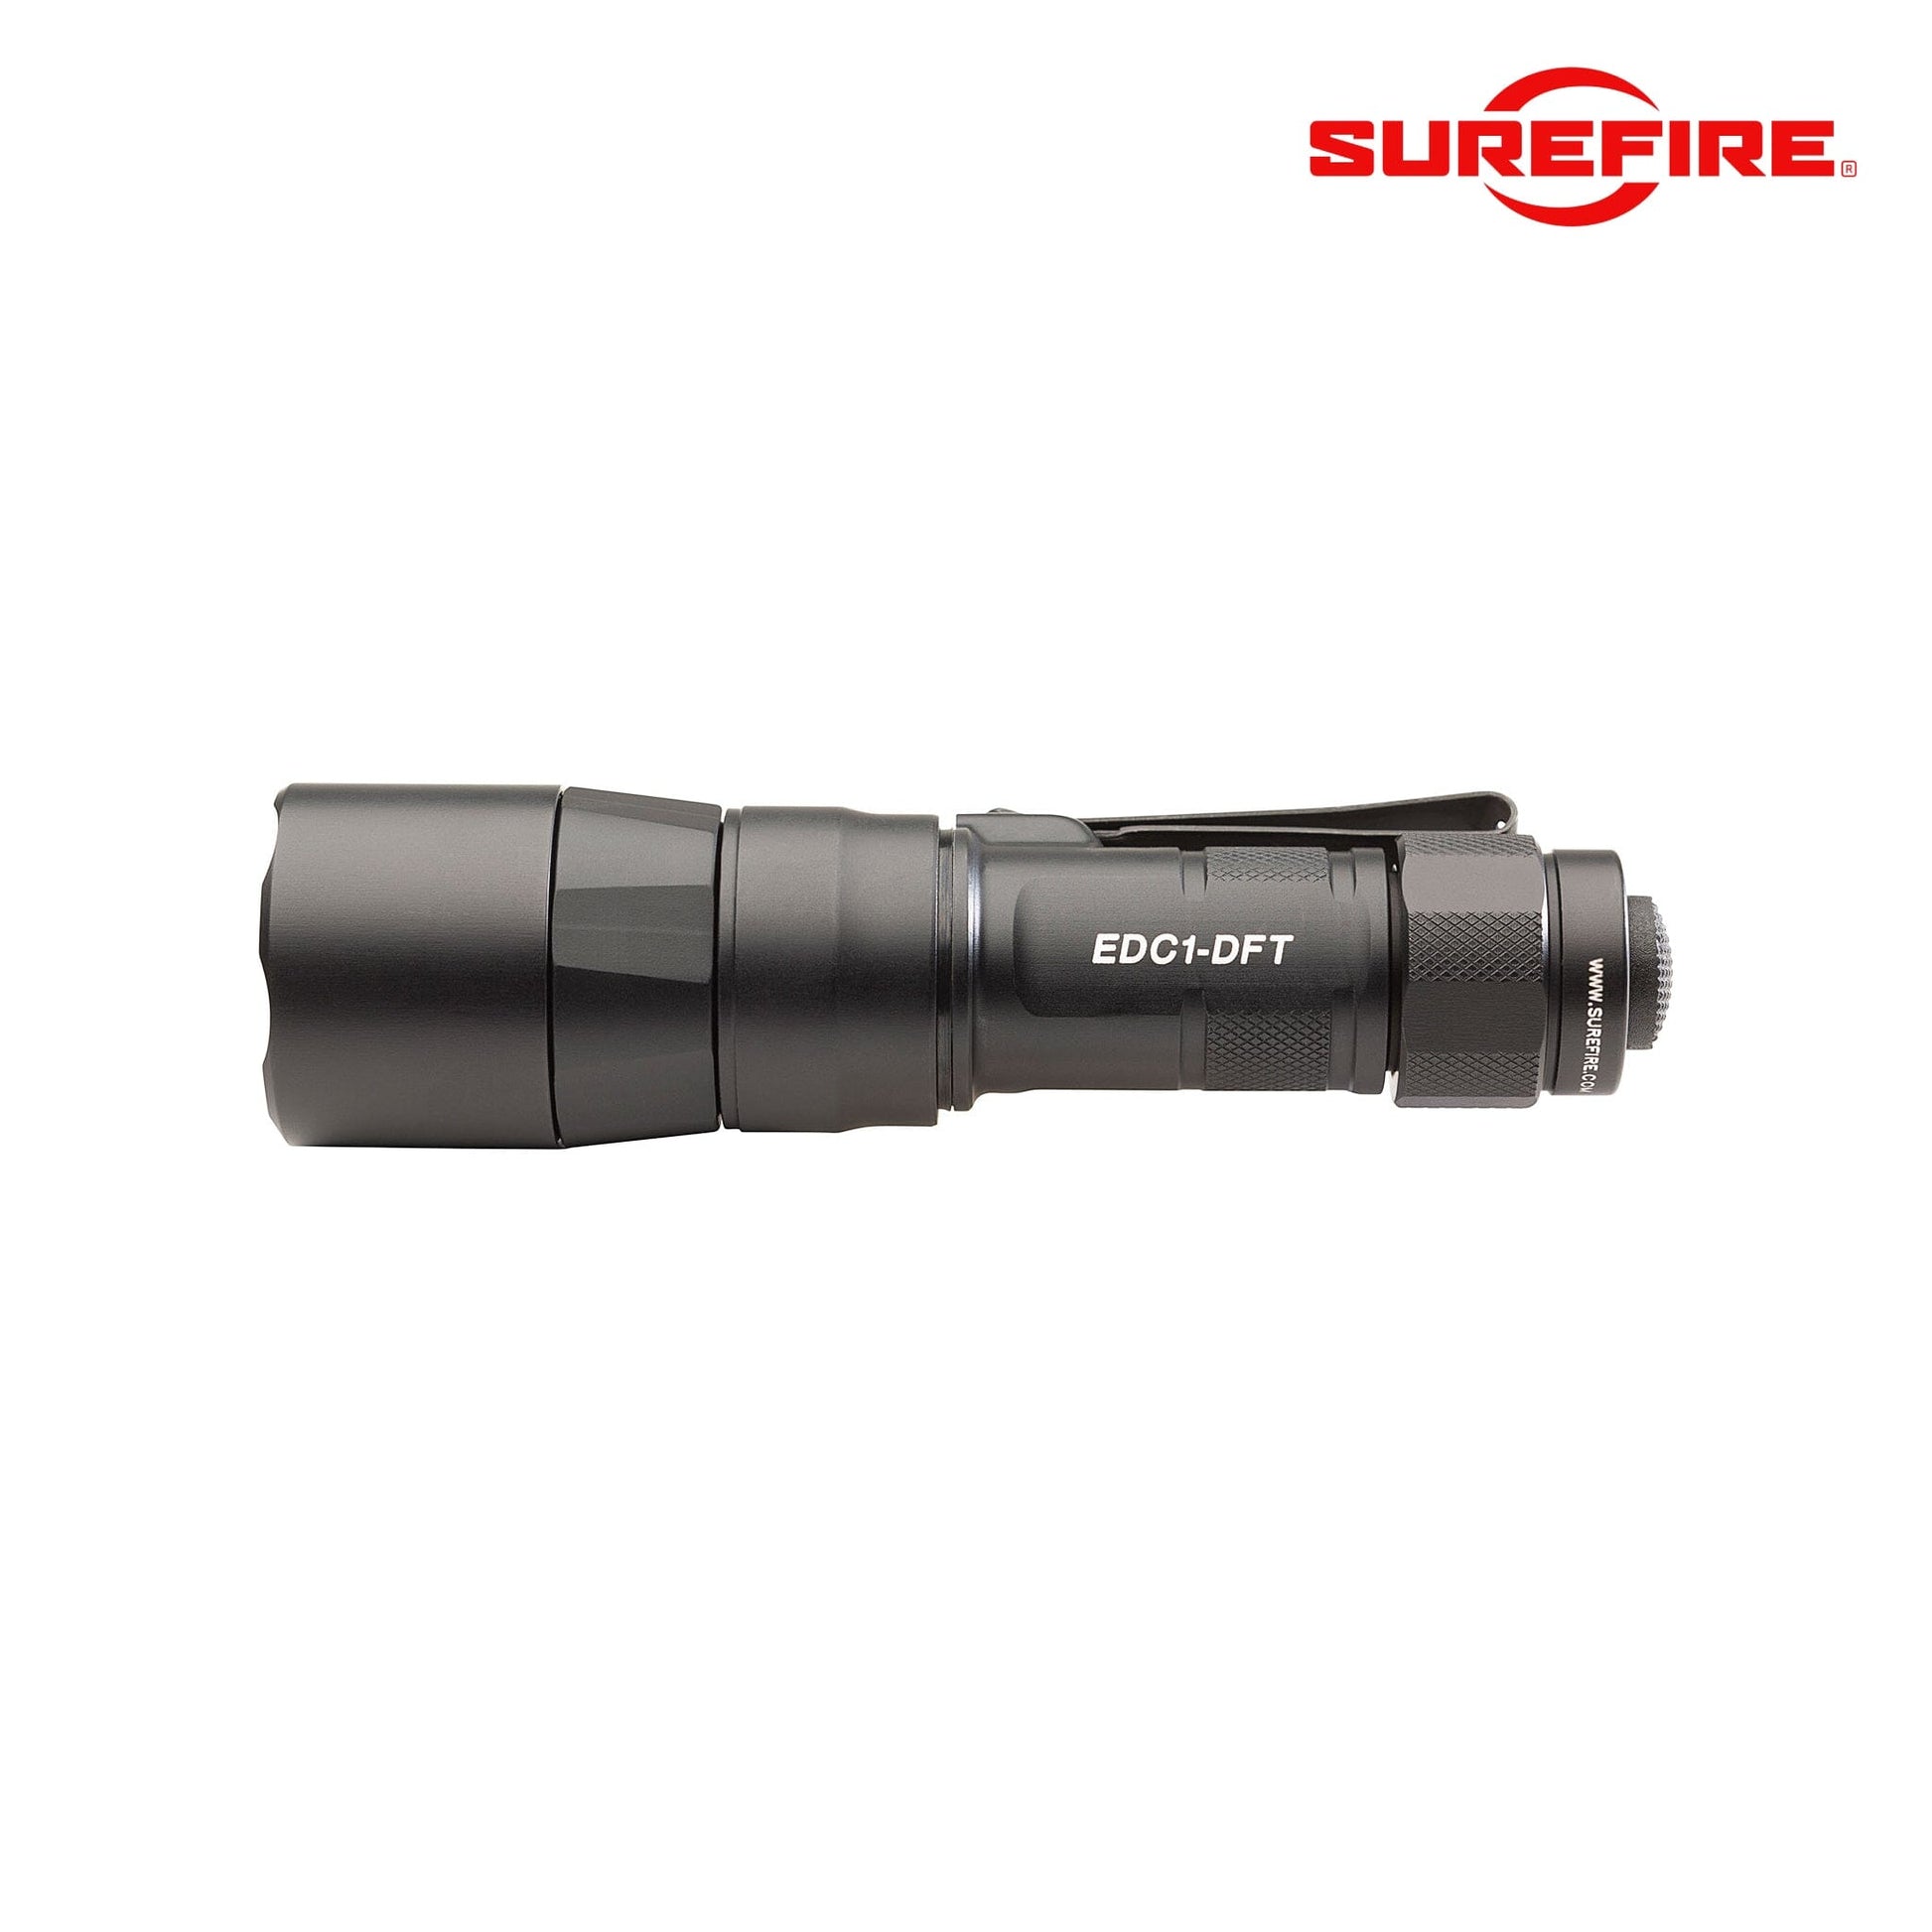 SureFire EDC1-DFT High-Candela Everyday Carry LED Flashlight Black Flashlight SureFire 